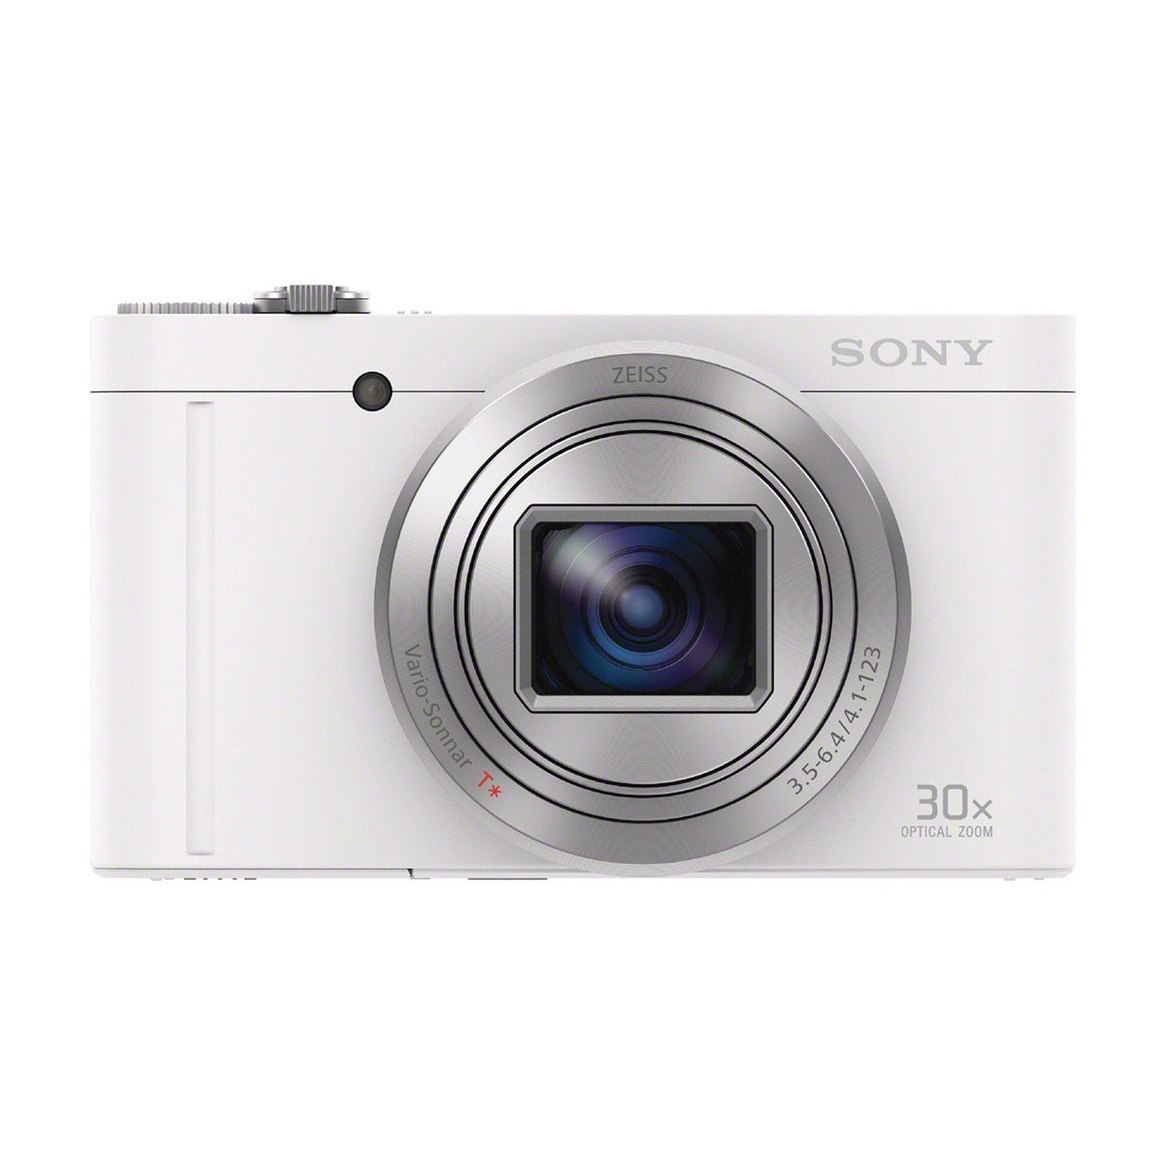 Với sự kết hợp hoàn hảo giữa chất lượng và thiết kế thời trang, máy ảnh KTS Sony CyberShot DSC-WX500 màu trắng sẽ khiến bạn trầm trồ. Hãy xem hình ảnh liên quan để khám phá những tính năng và cải tiến đáng kinh ngạc trên chiếc máy ảnh này!